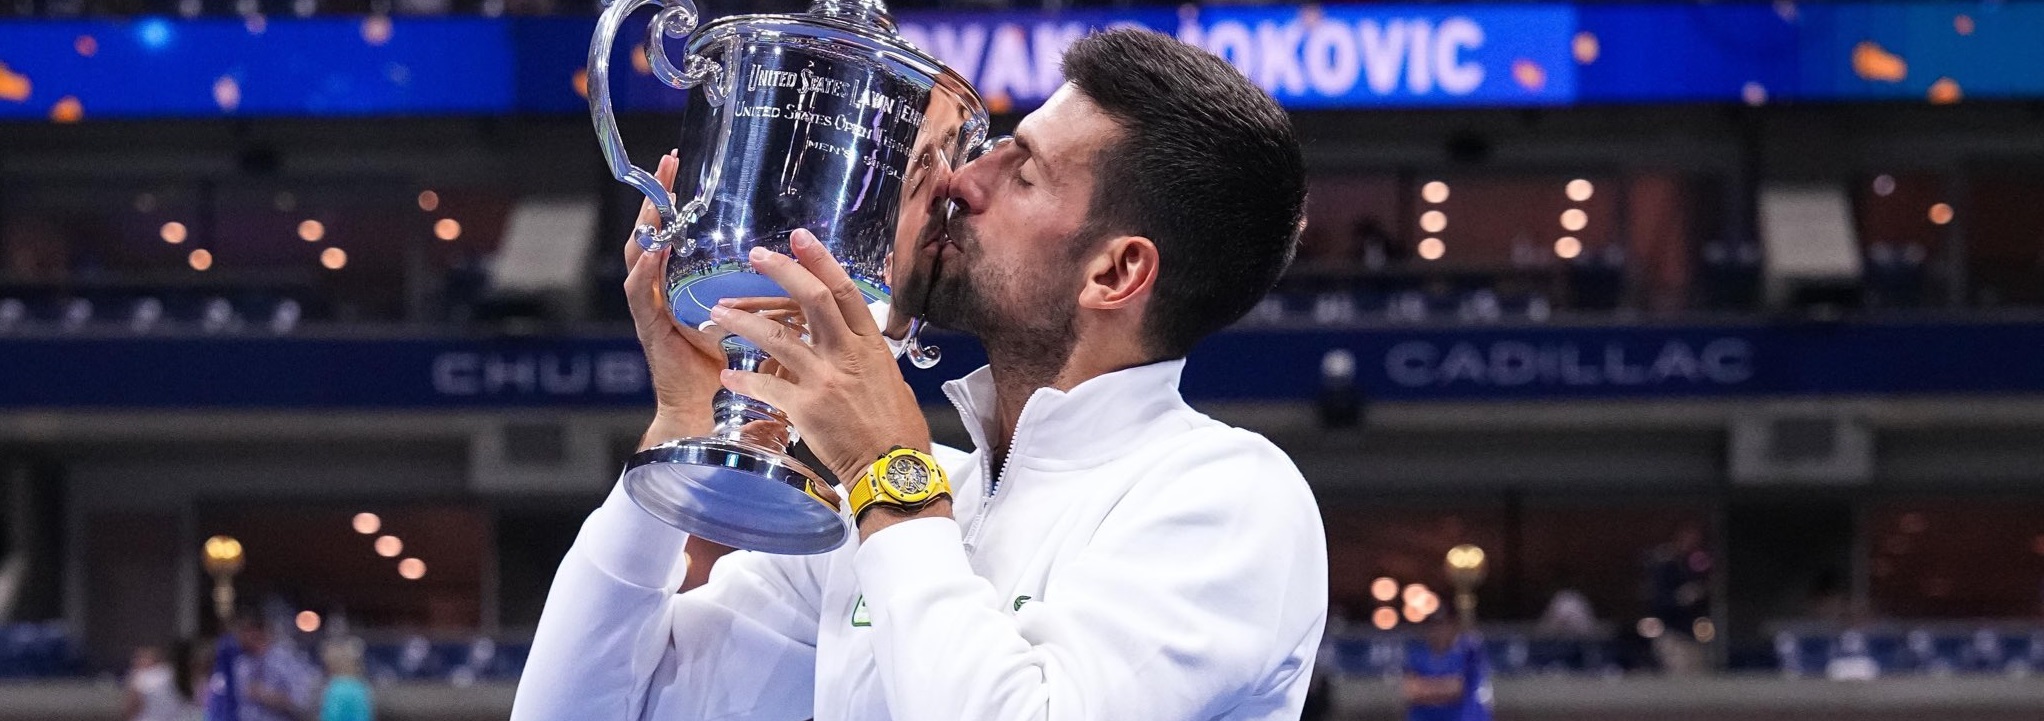 Andy Murray Yakin Novak Djokovic Masih akan Terus Mendominasi Tenis